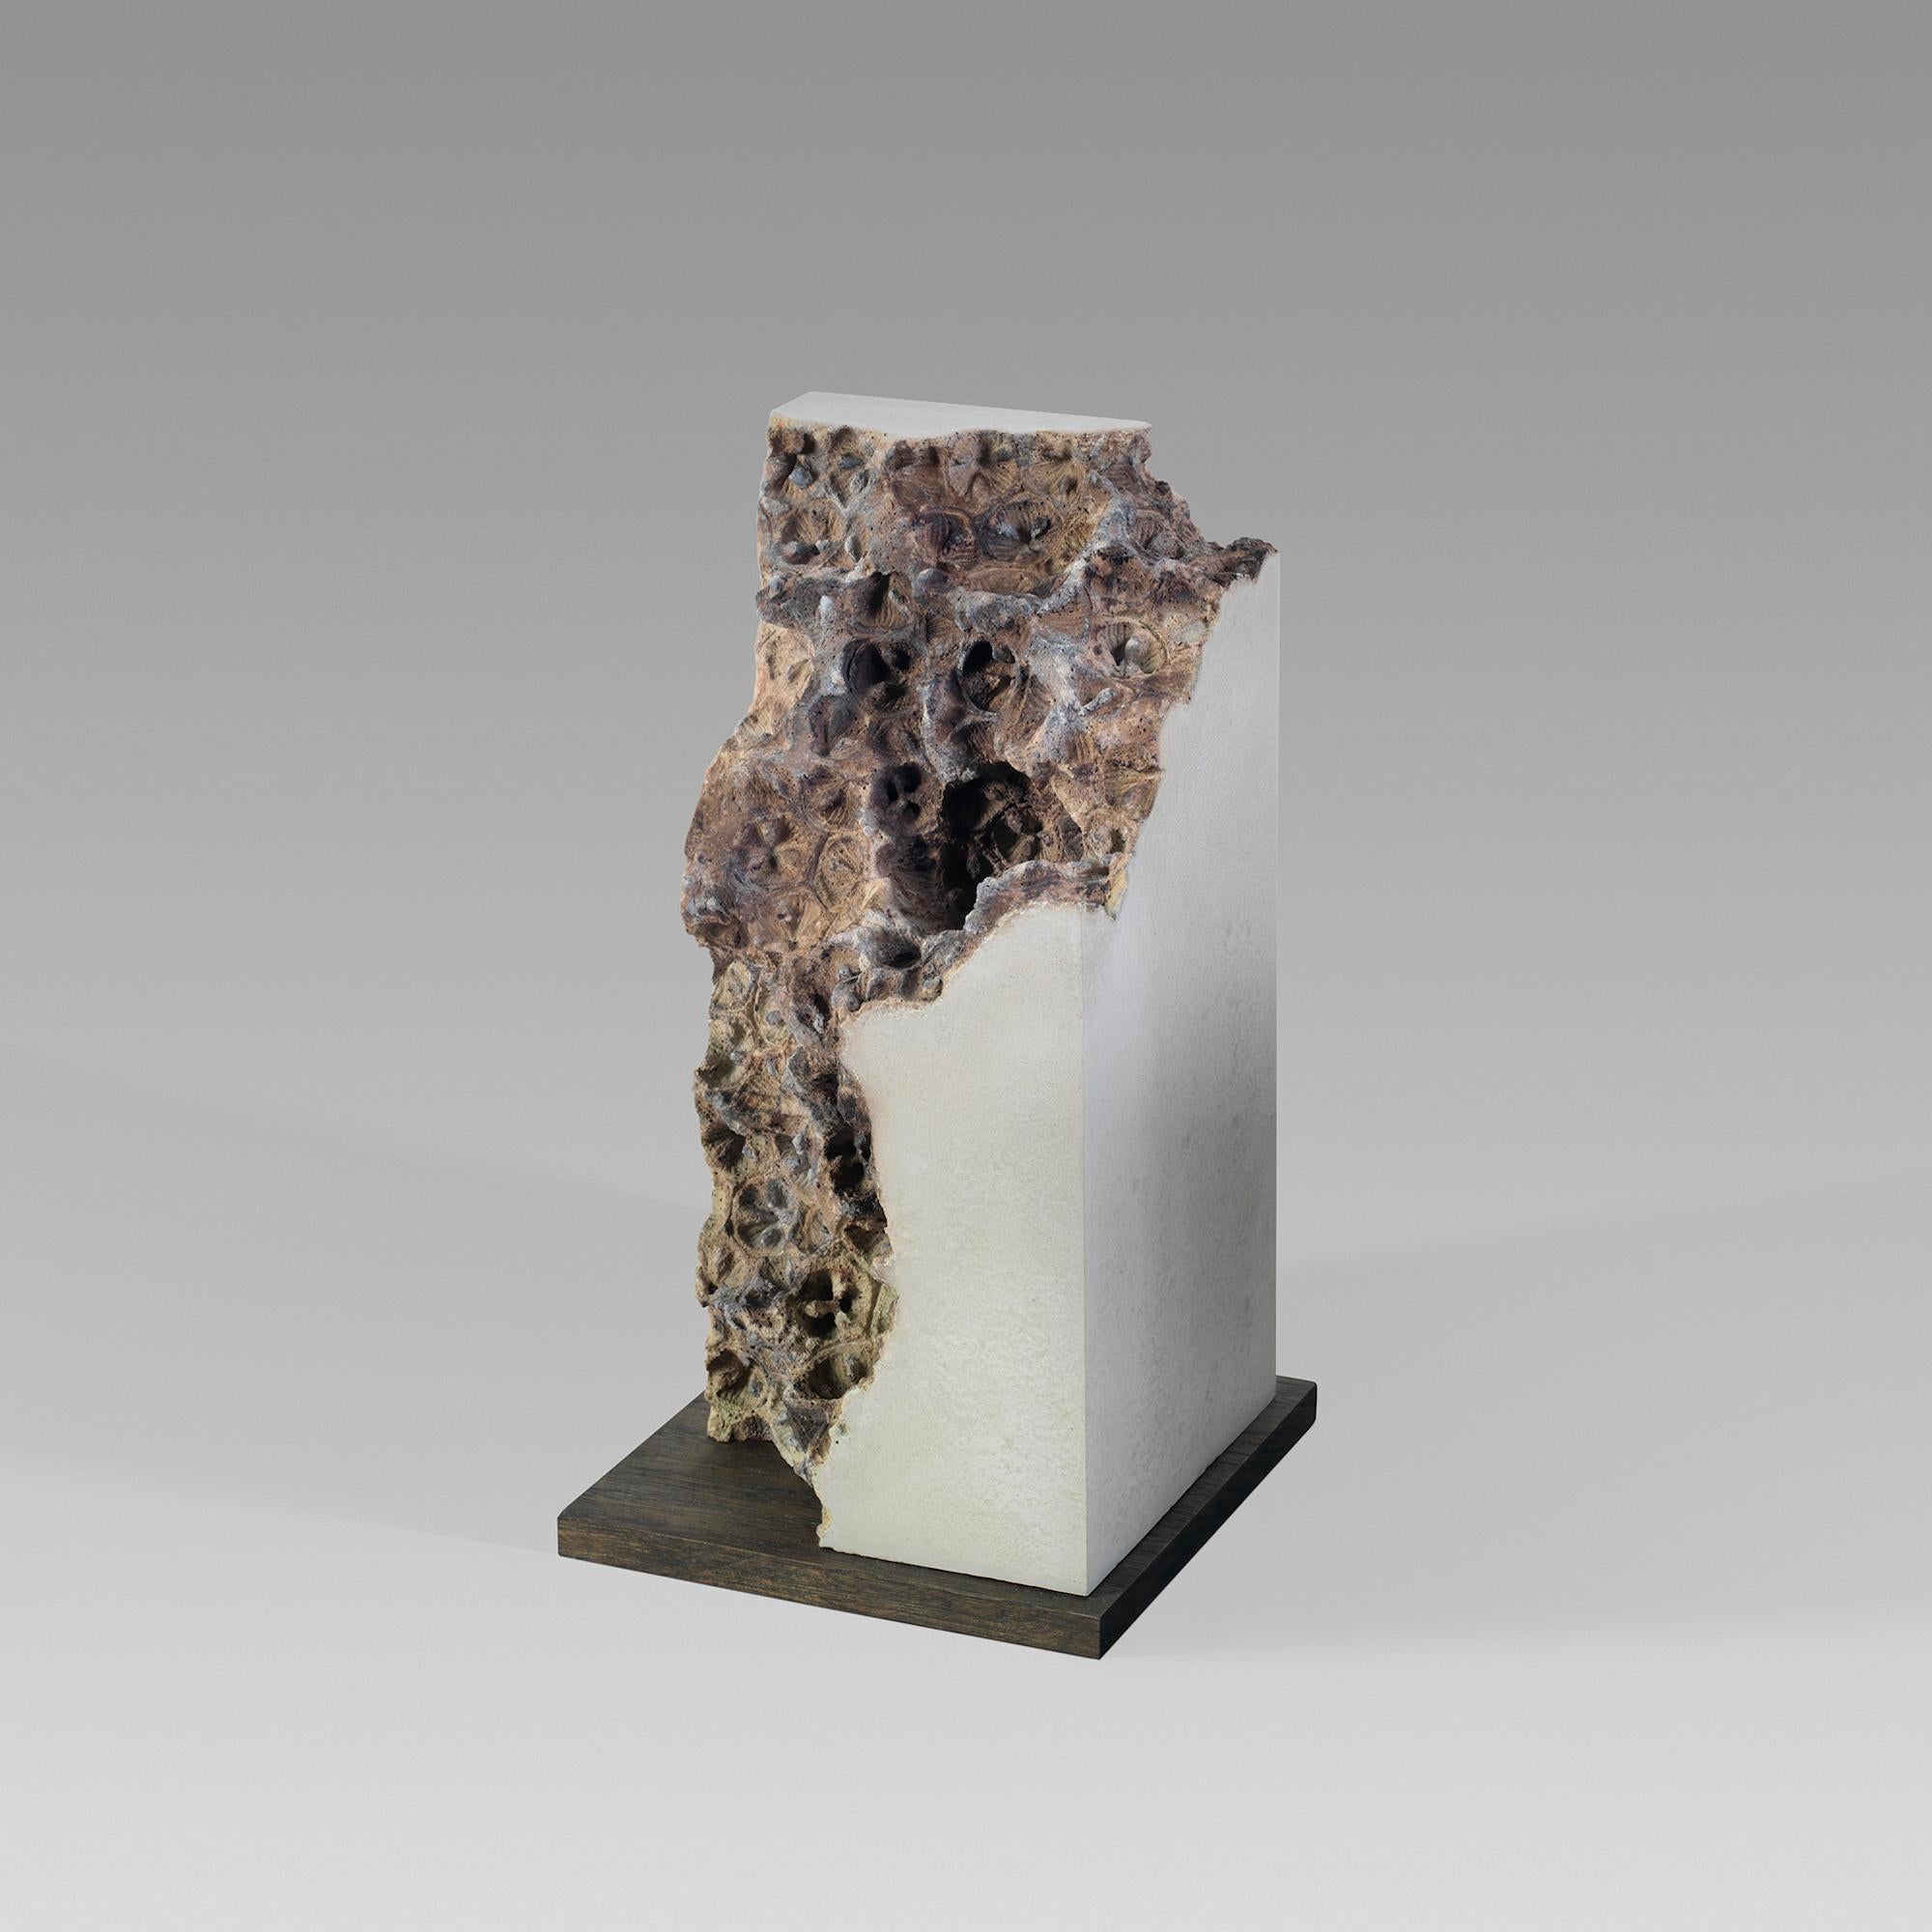 Traces V est une sculpture en béton unique réalisée par le sculpteur anglais contemporain Oliver Ashworth-Martin. Ses dimensions sont de 26 × 13 × 13 cm (10.2 × 5.1 × 5.1 in).
Cette sculpture est signée par l'artiste et accompagnée d'un certificat